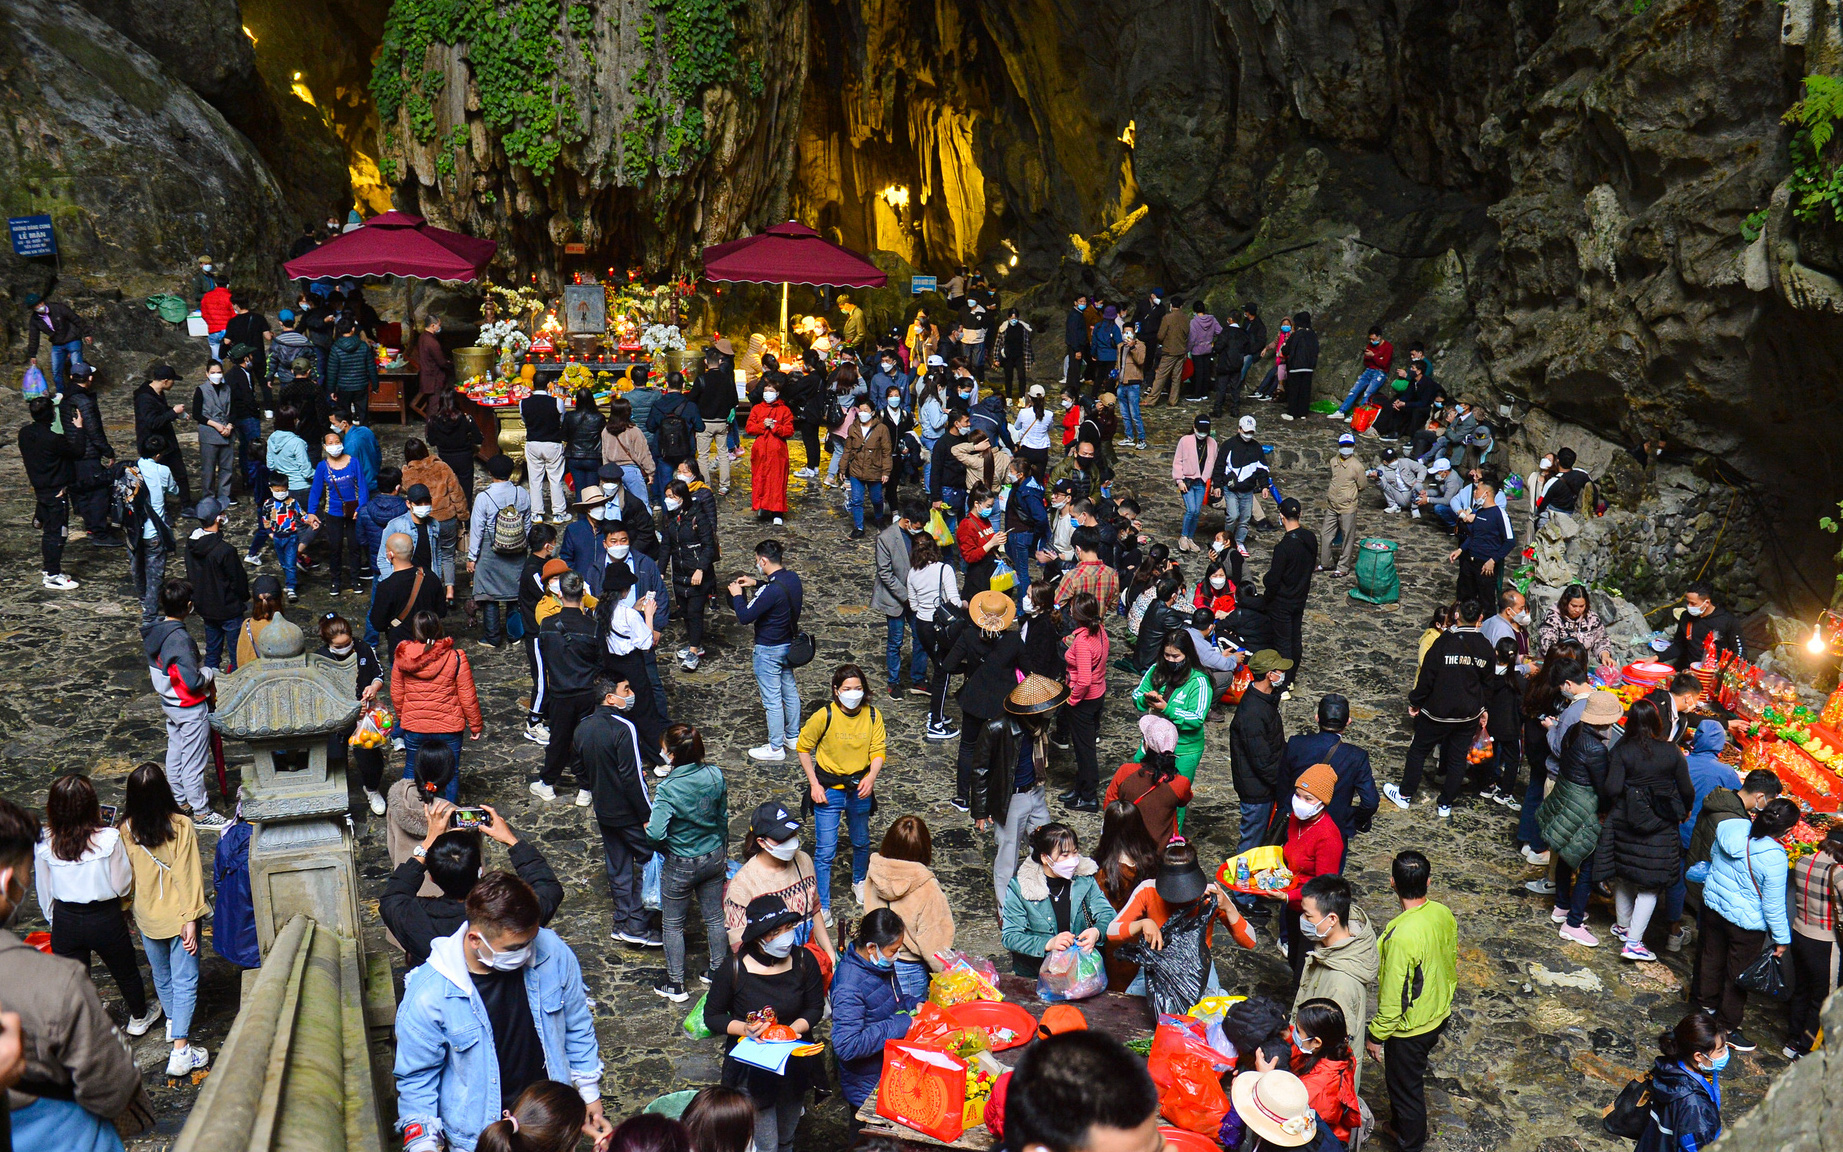 Chùa Hương ngày đầu chính thức mở lại: Hàng nghìn người chen nhau lễ Phật ở động Hương Tích, hứng "nước lộc" rồi thoa lên mặt